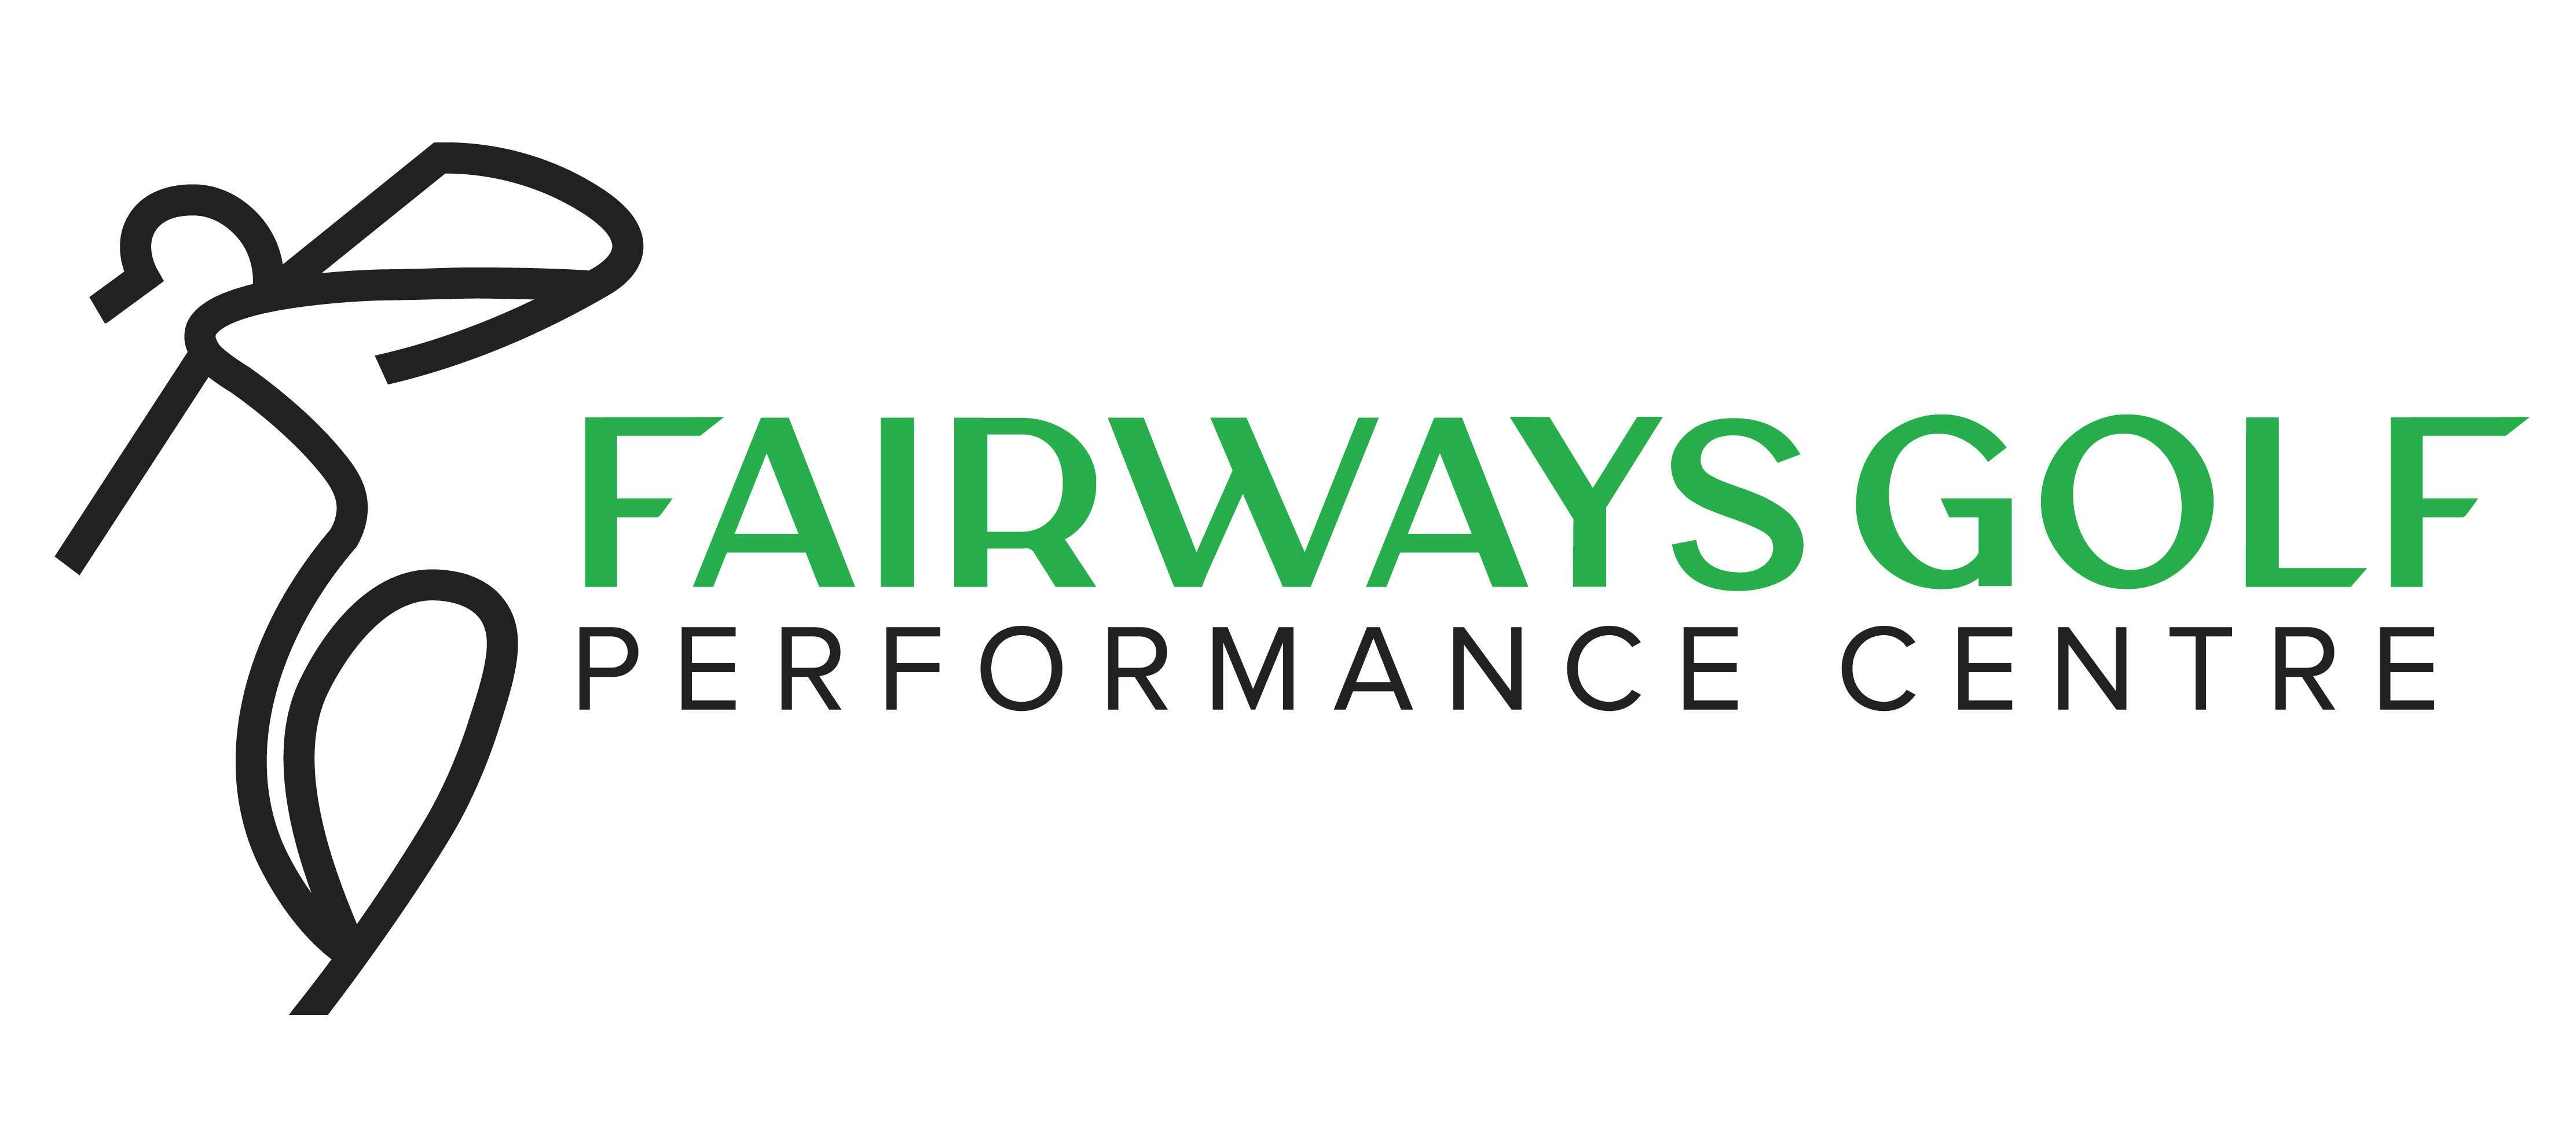 Fairways Golf Performance Centre